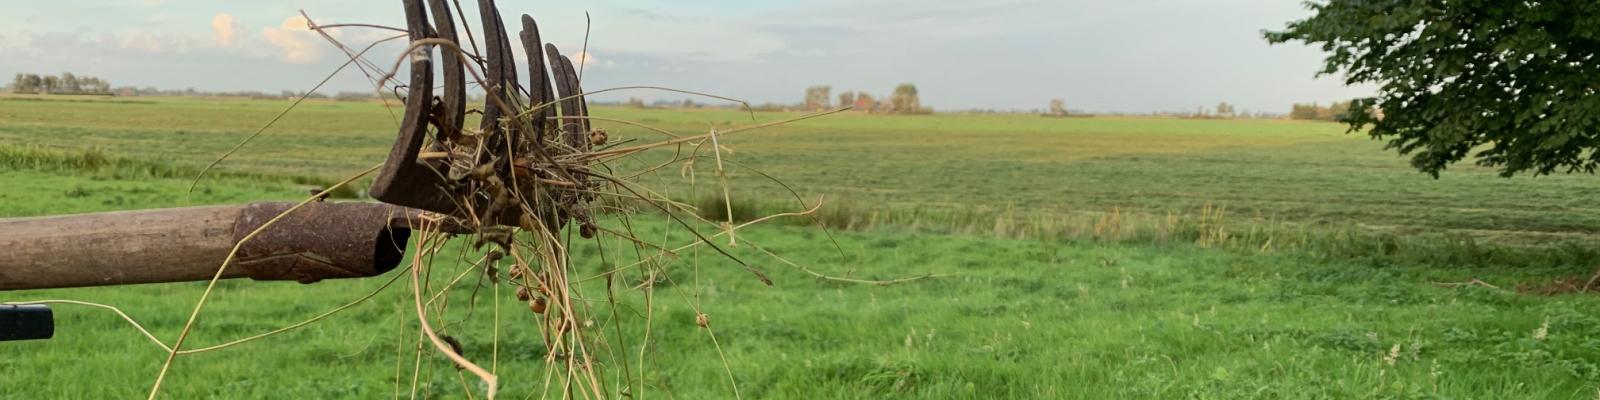 Uitzicht over het platteland met een hark en stro